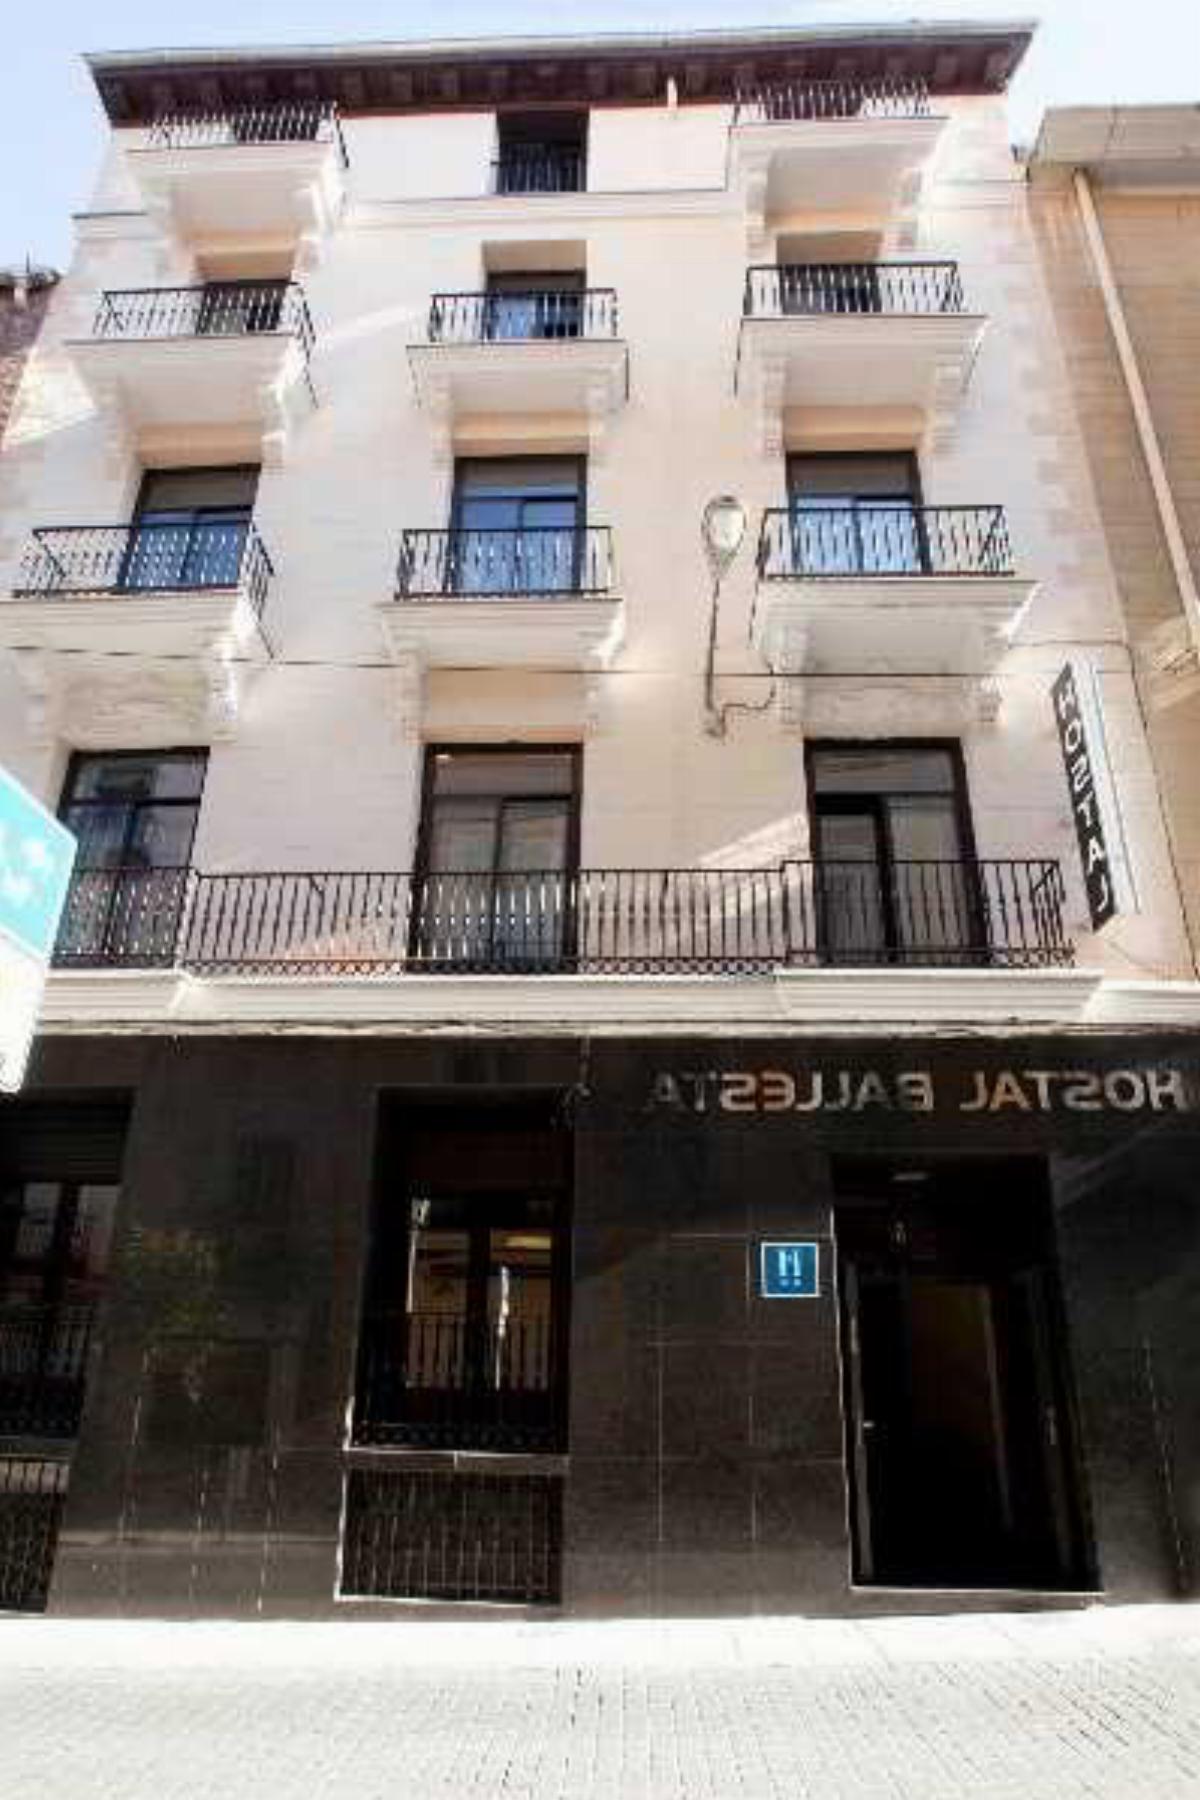 Ballesta Hotel Madrid Spain